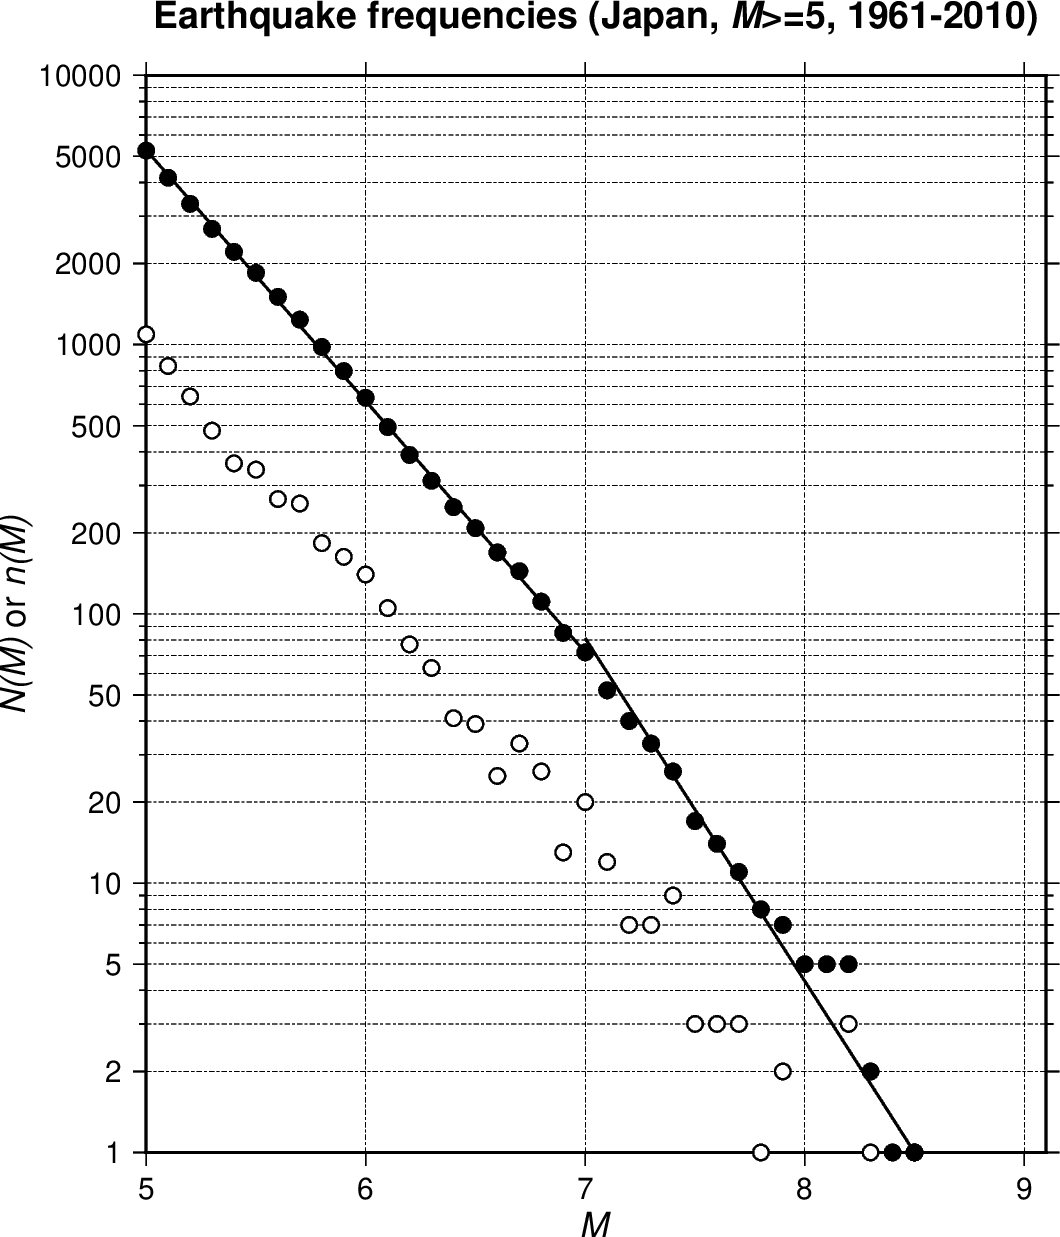 ２本の直線で近似したグーテンベルグ-リヒター則のグラフ（日本付近， M≥5， 1961-2010年の50年間）